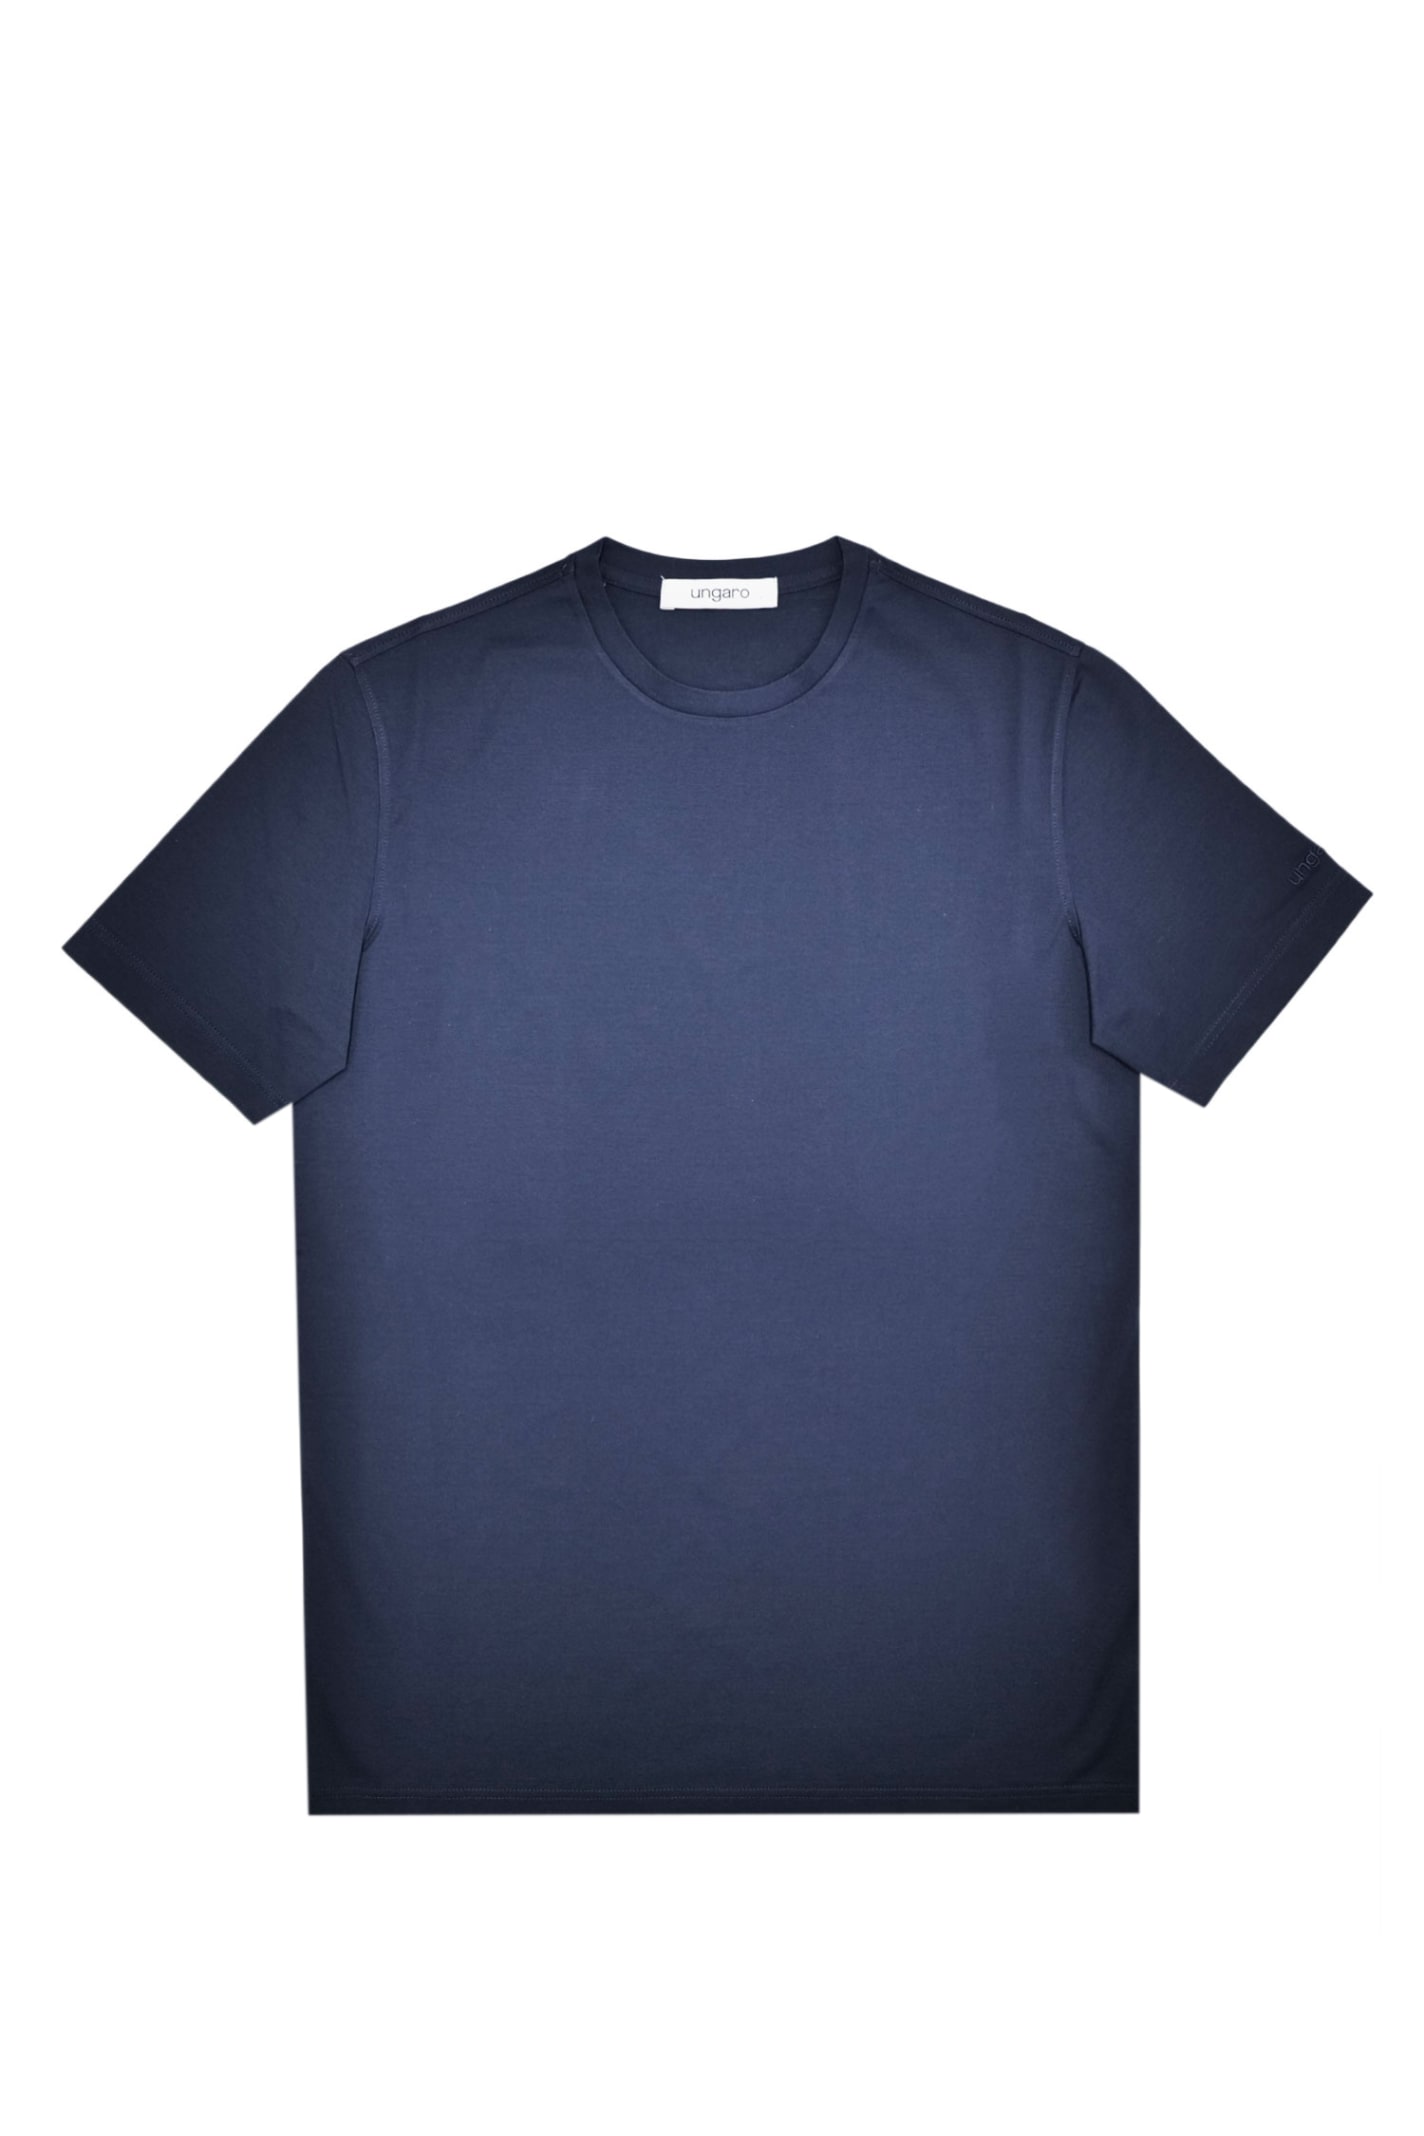 Emanuel Ungaro T-shirt In Blue